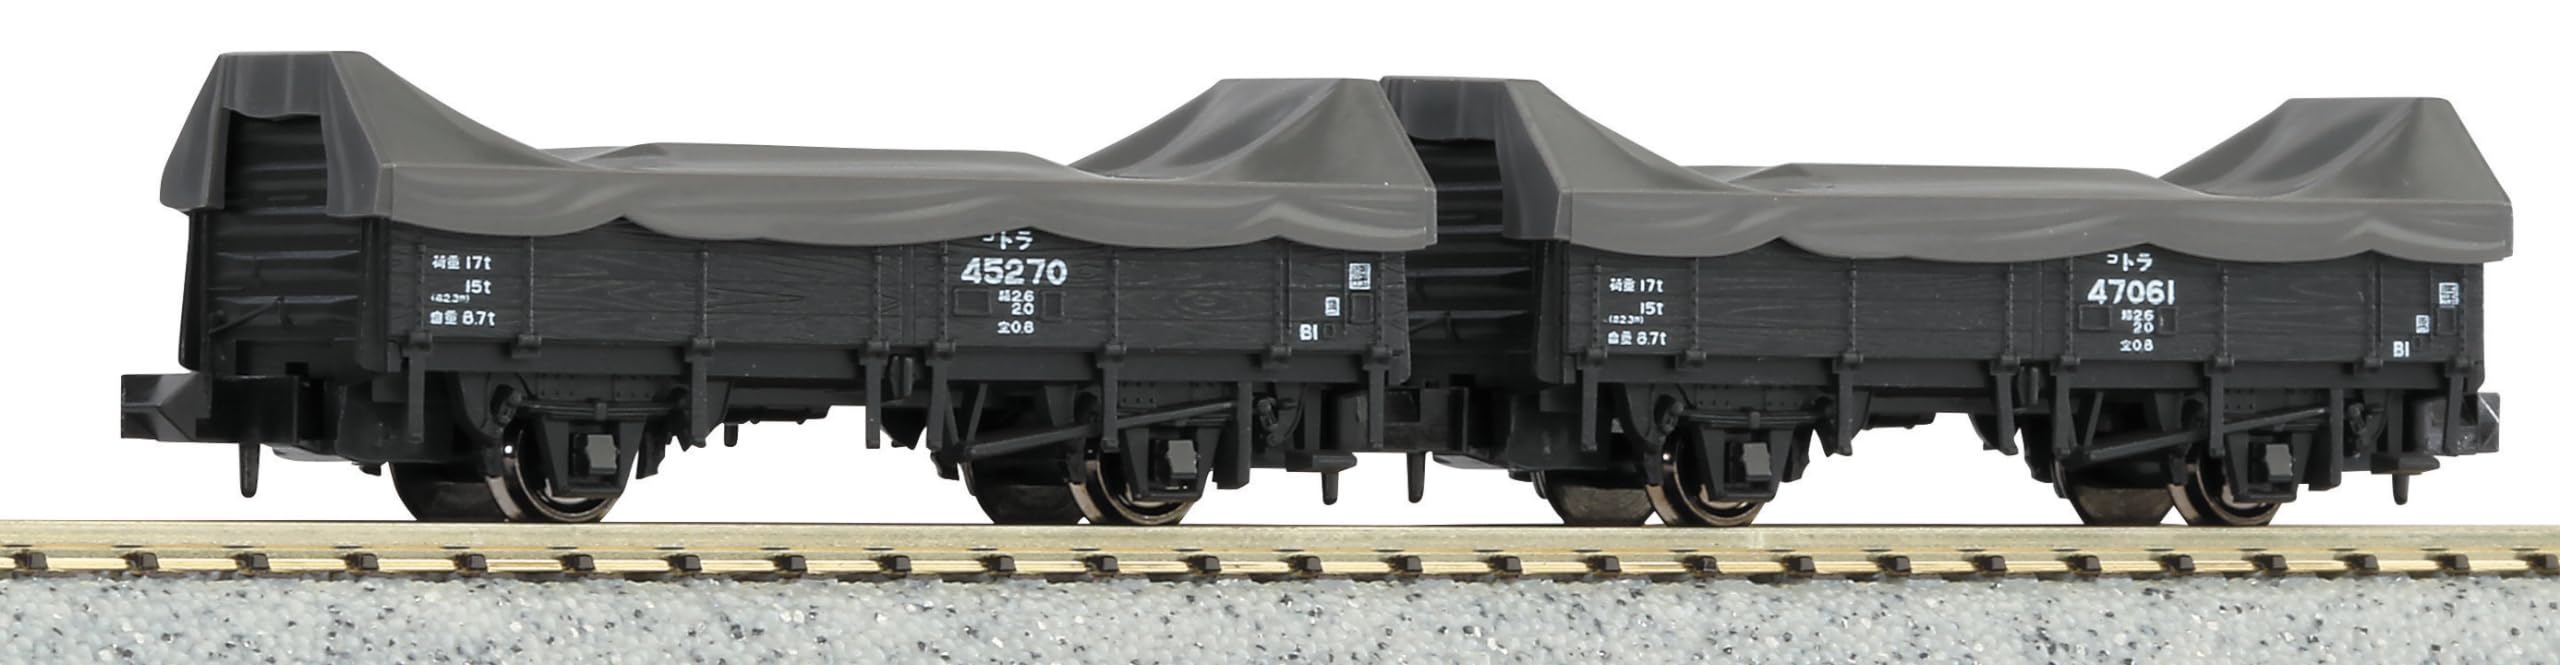 Kato N Spur Tora 45000 Eisenbahnmodell - 2 Güterwagen mit Ladung 8027-1